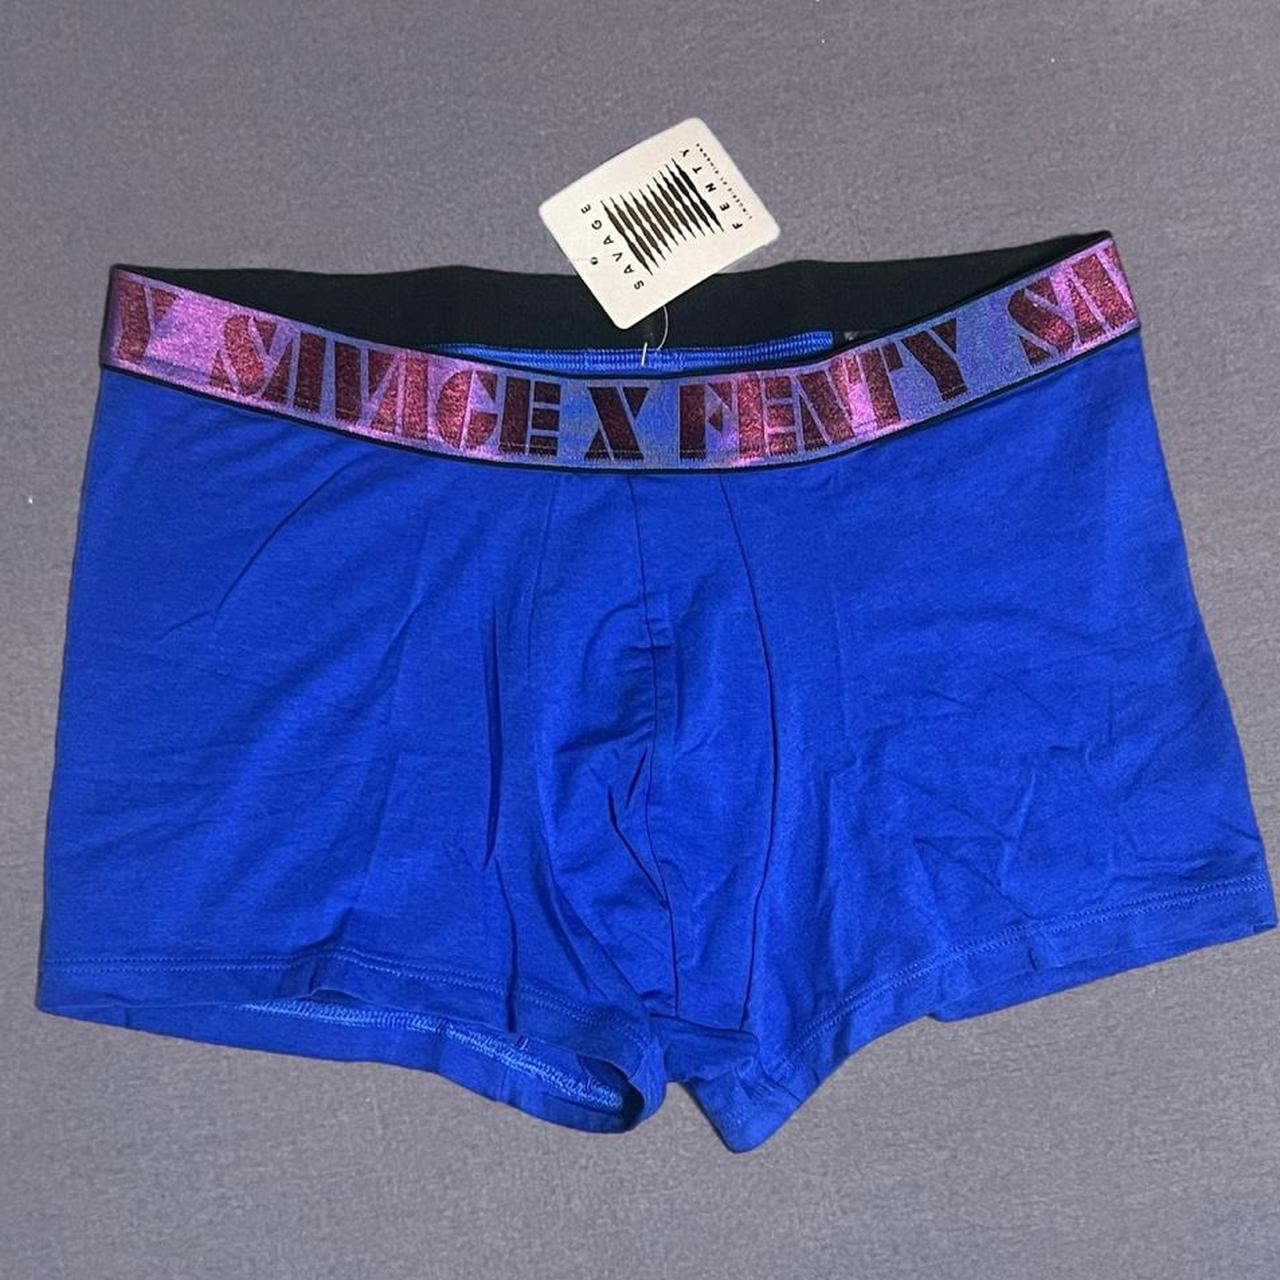 Savage X Fenty Men's Underwear. NWT / Large. - Depop